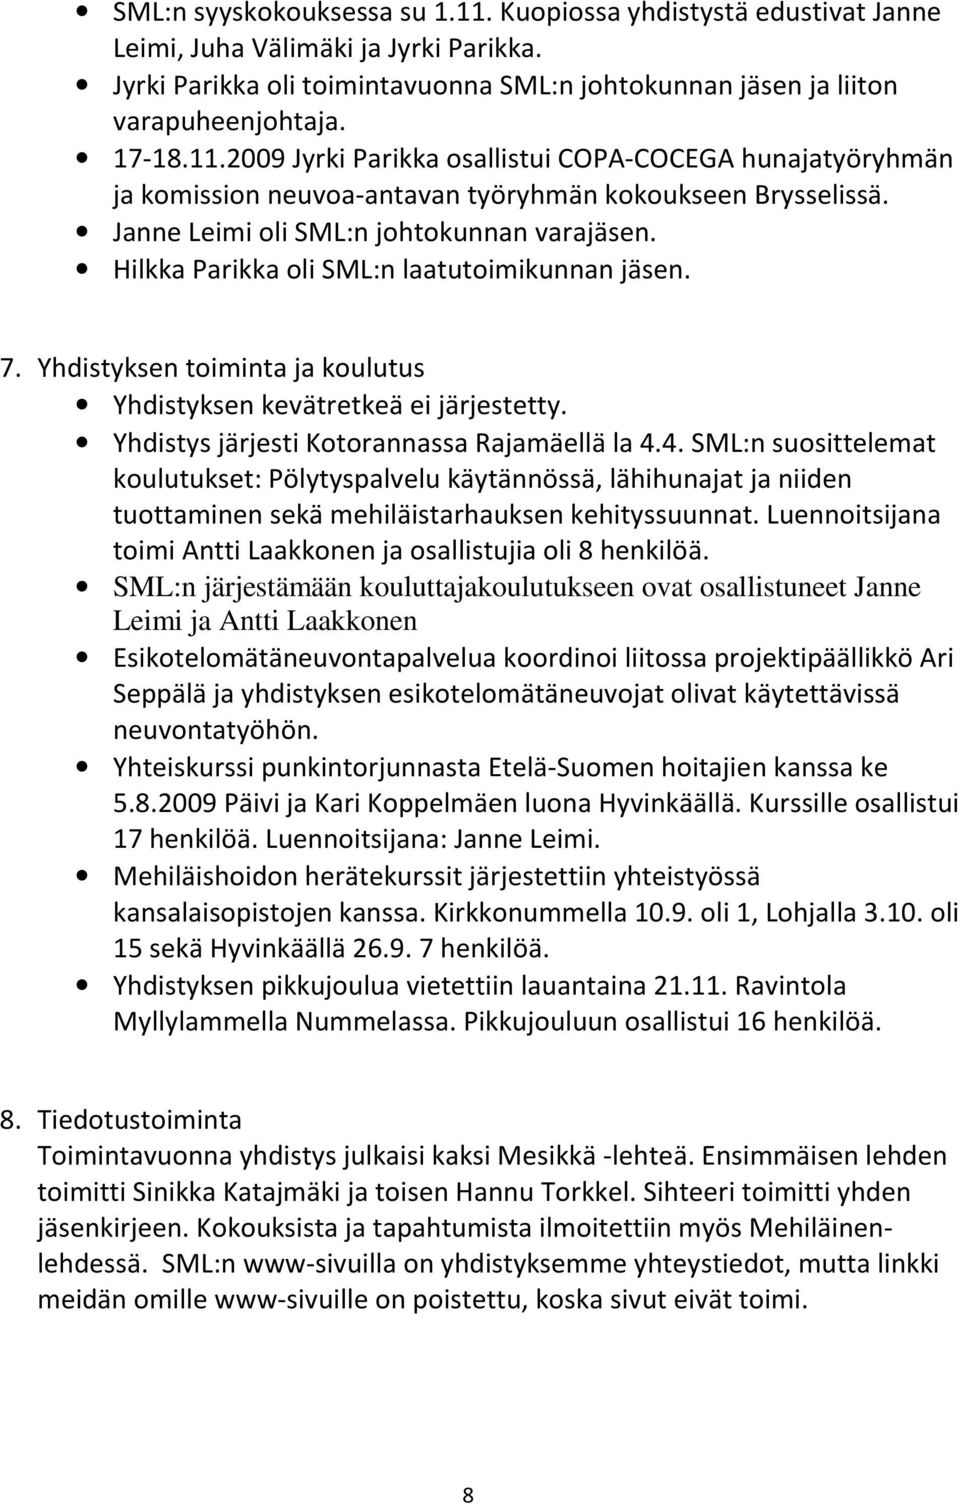 Hilkka Parikka oli SML:n laatutoimikunnan jäsen. 7. Yhdistyksen toiminta ja koulutus Yhdistyksen kevätretkeä ei järjestetty. Yhdistys järjesti Kotorannassa Rajamäellä la 4.